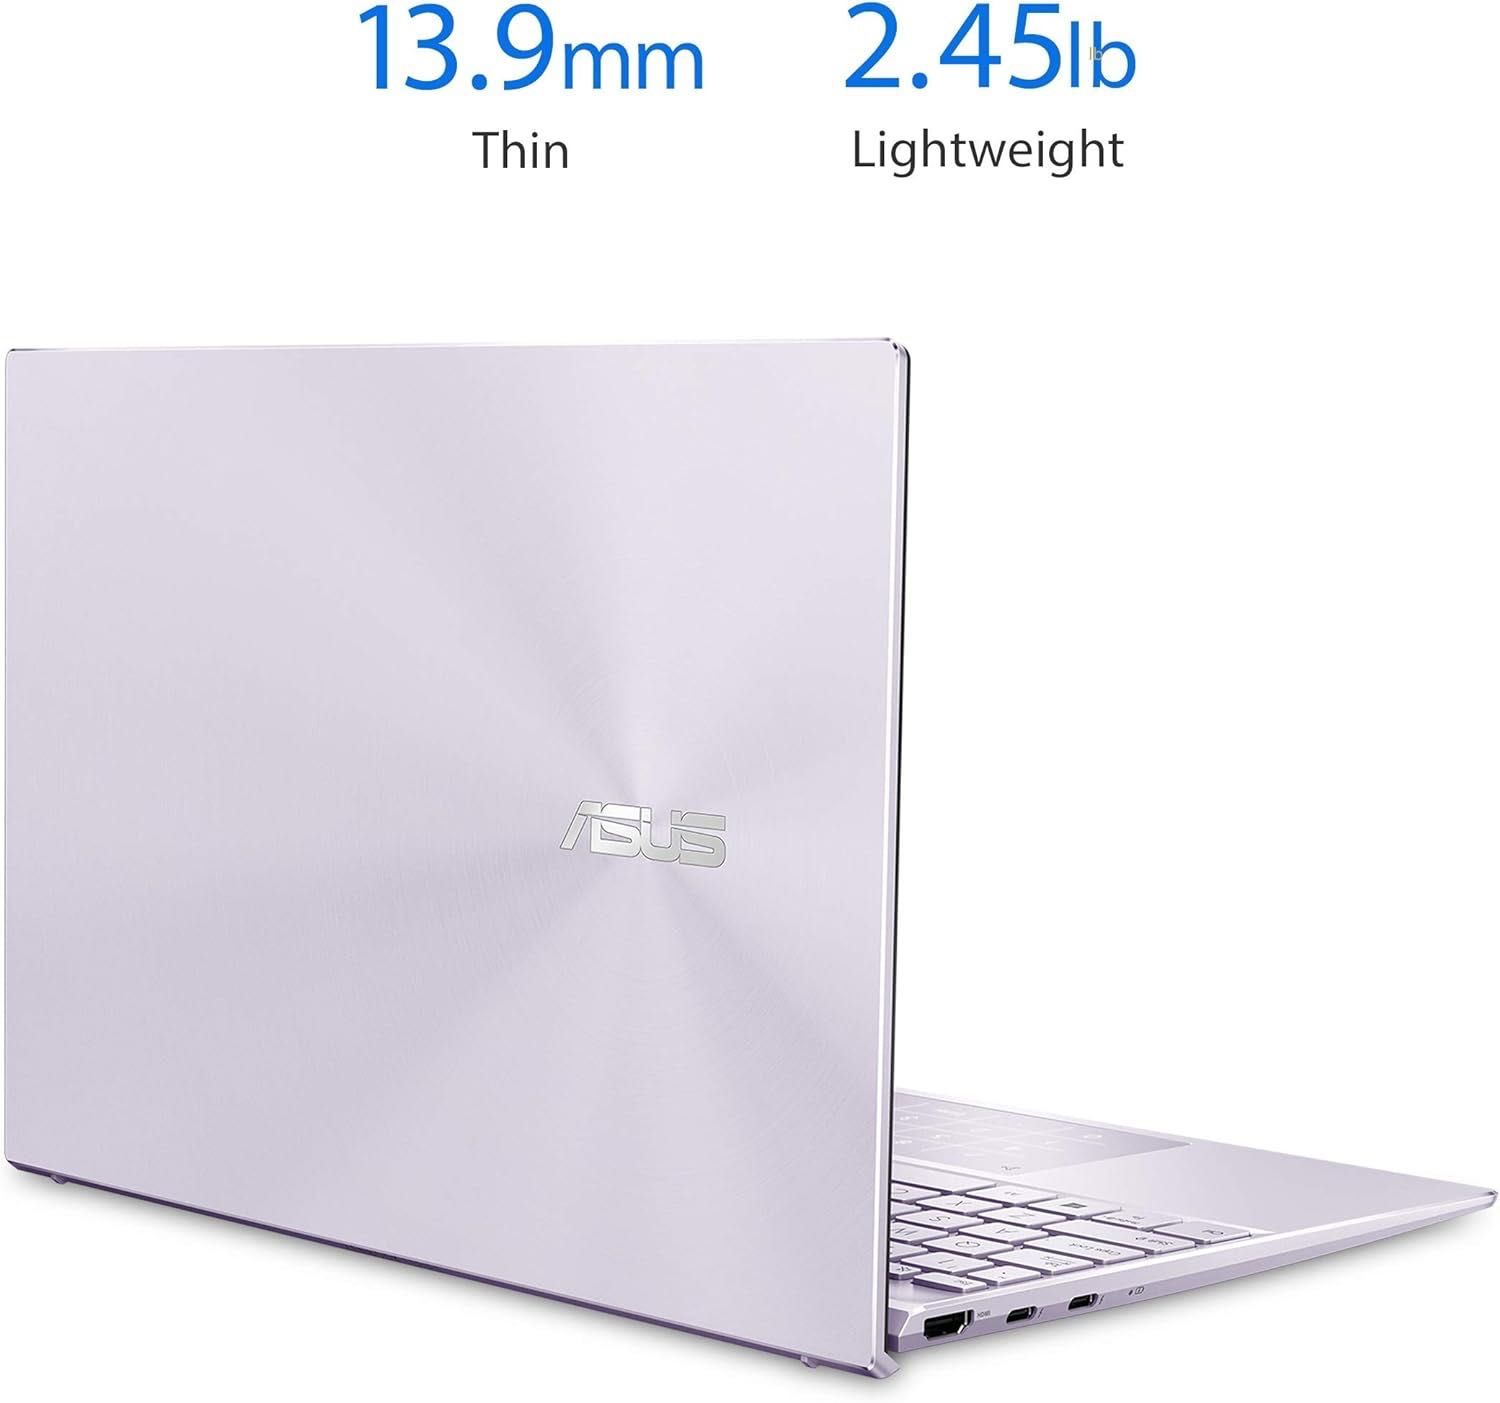 ASUS ZenBook 13 UX325JA 13" IPS FHD i5-1035G1 8/256G метал 1кг